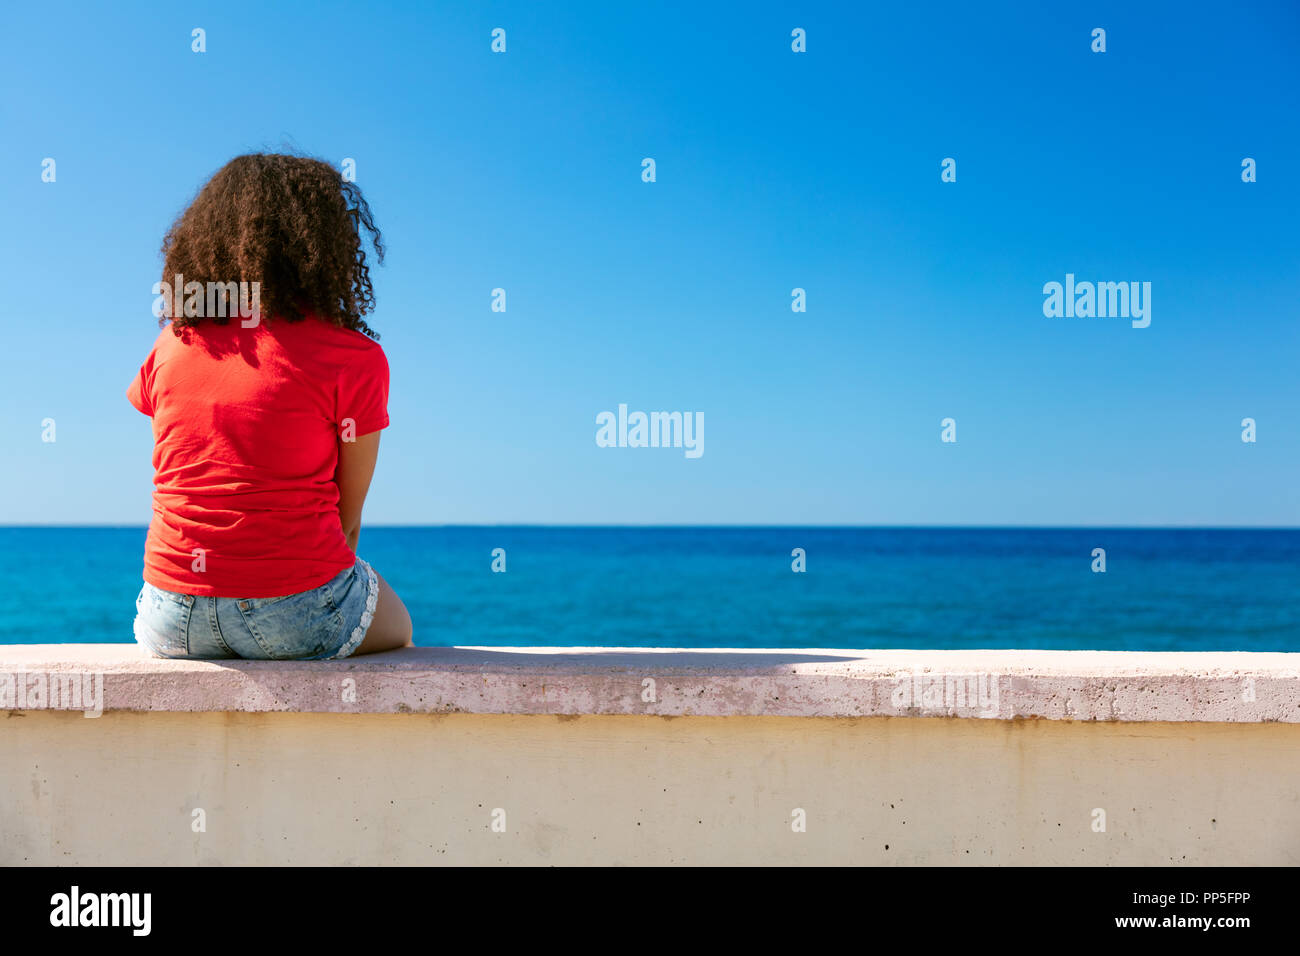 Razza mista americano africano ragazza adolescente femmine giovane donna che indossa una t-shirt rossa e gli shorts in denim seduto su una parete che guarda a un mare blu Foto Stock